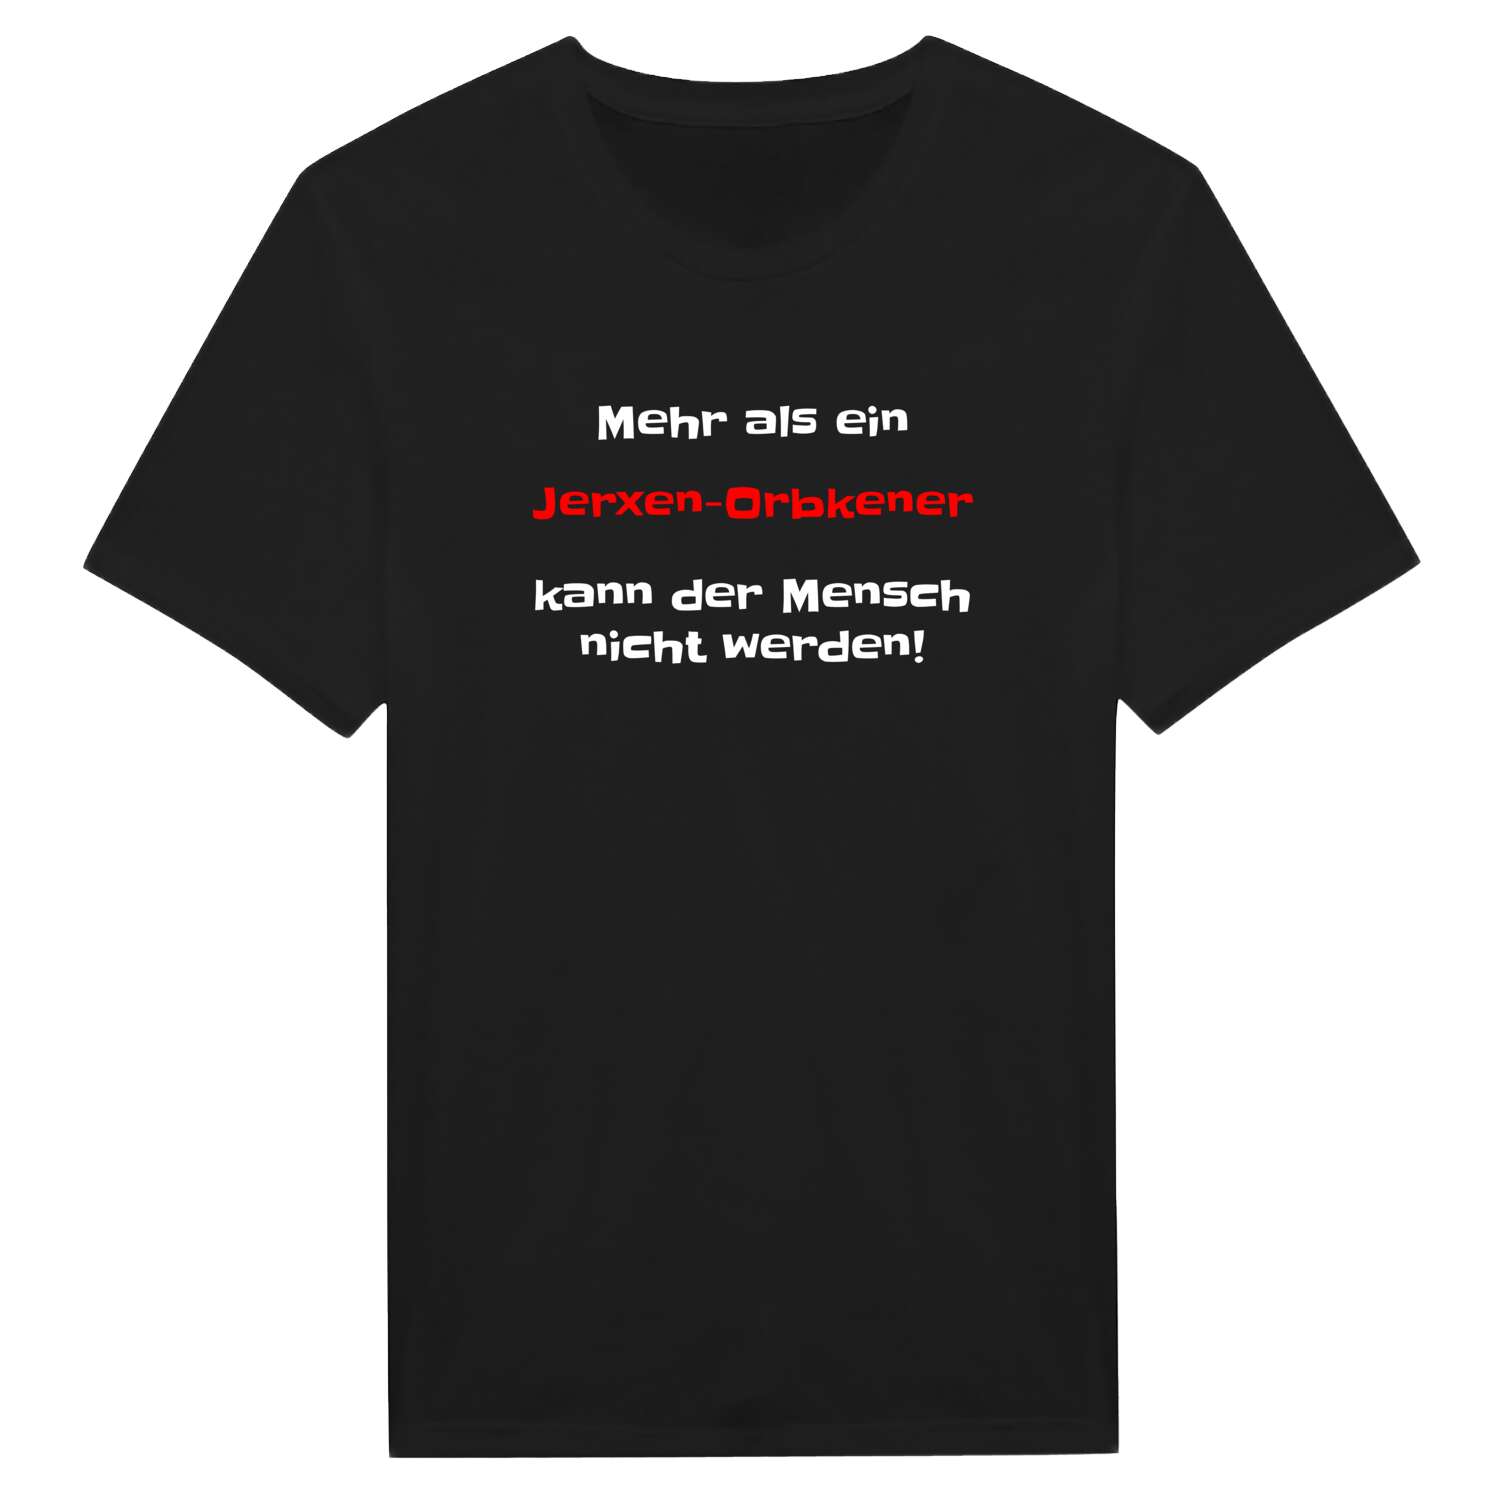 Jerxen-Orbke T-Shirt »Mehr als ein«